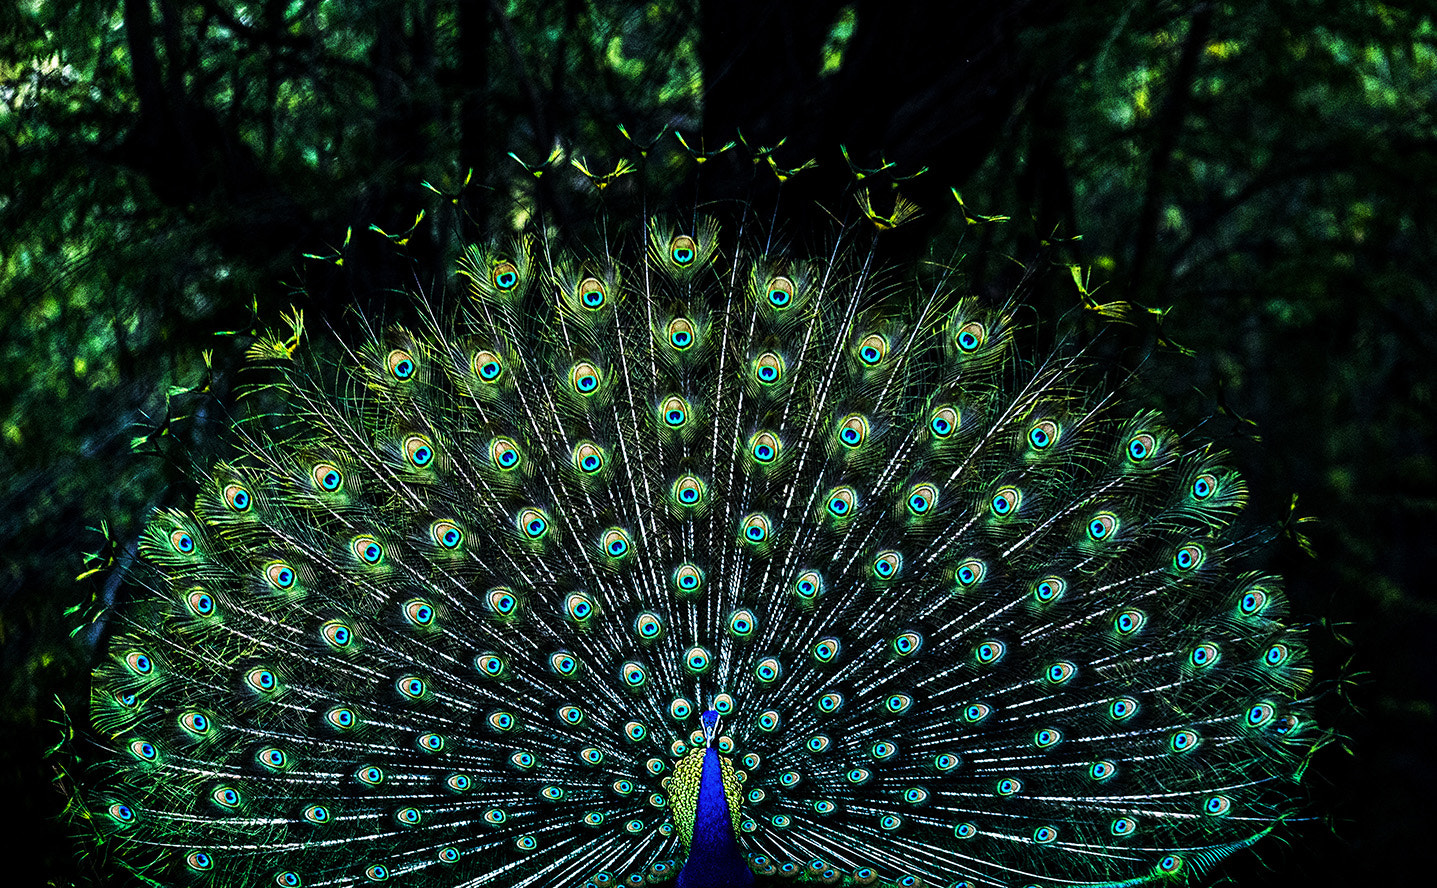 Canon EOS 6D sample photo. Dancing peacock photography